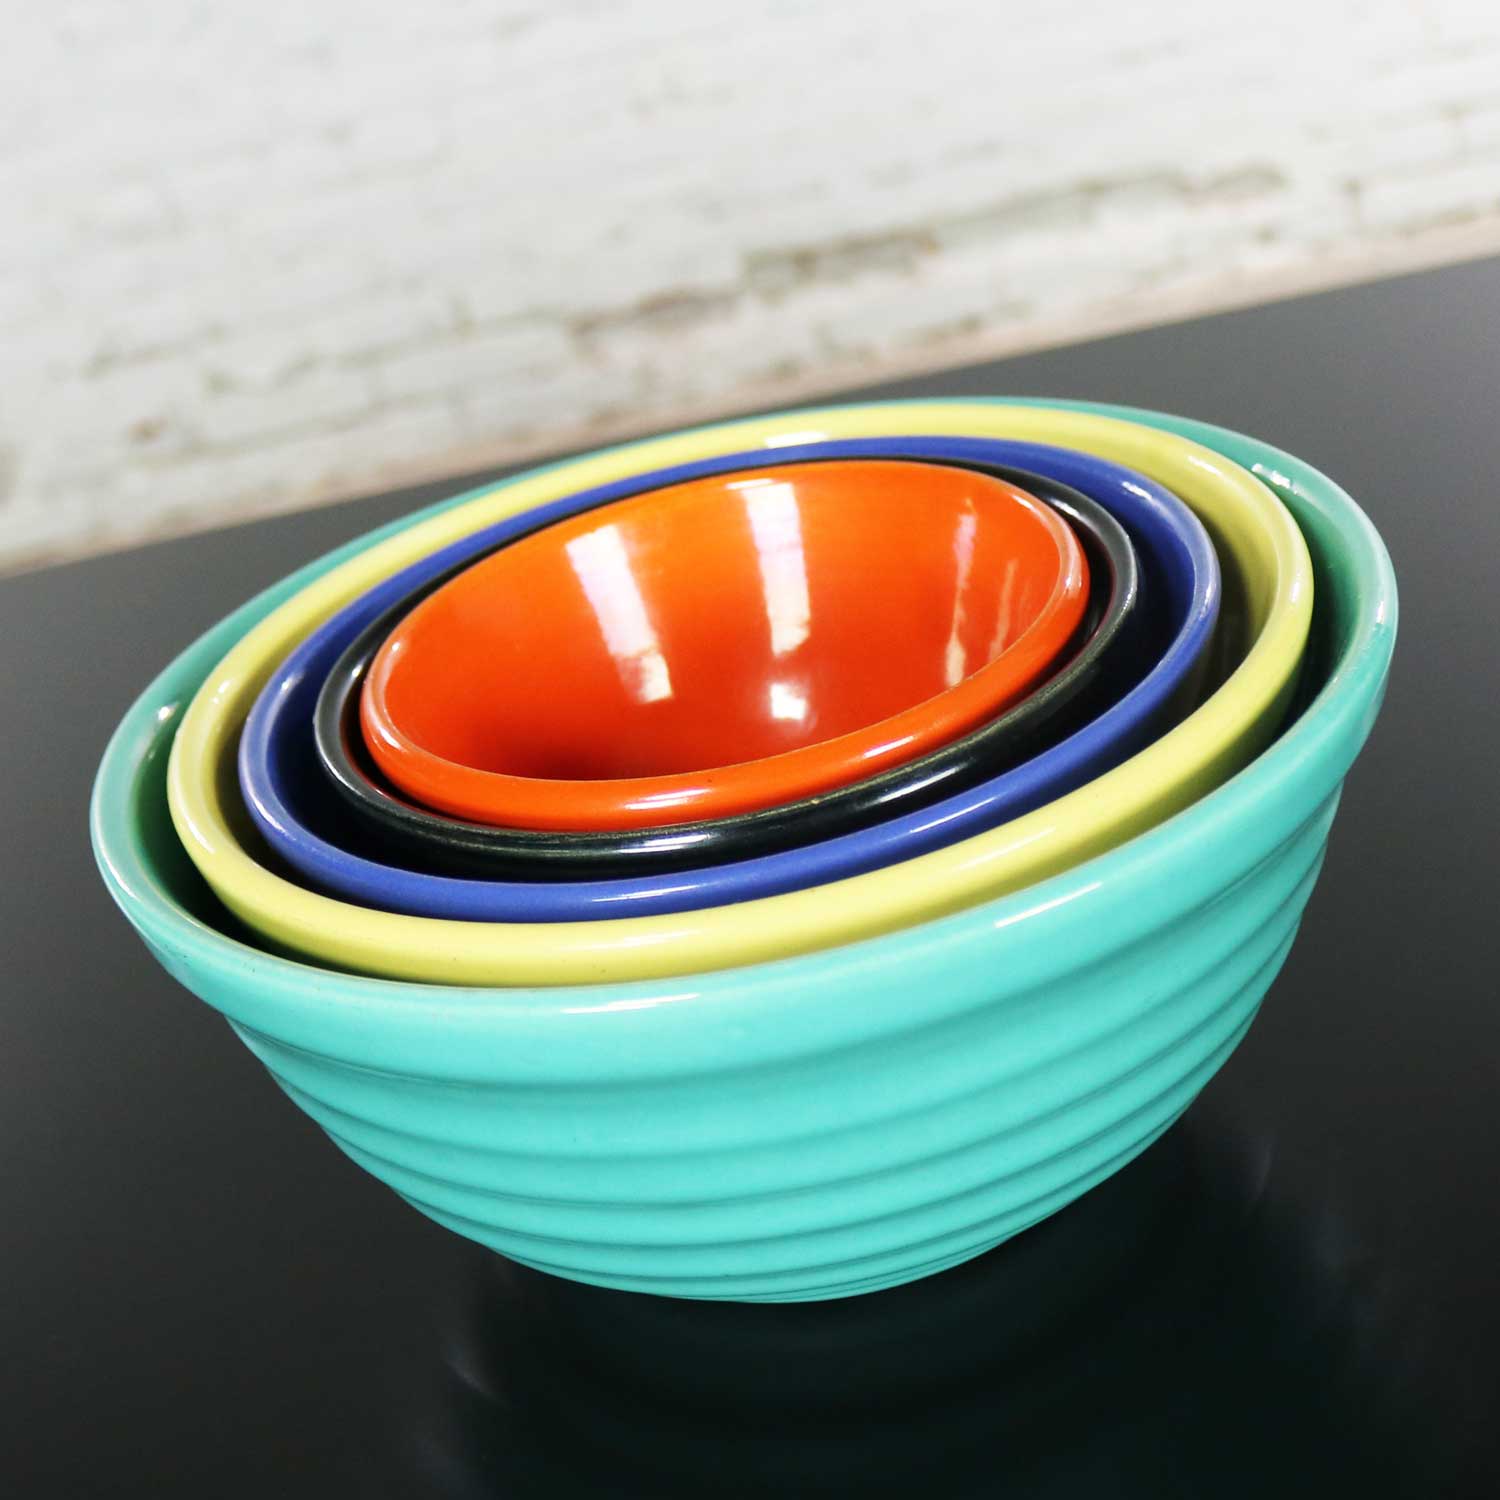 bad ceramic mixing bowls